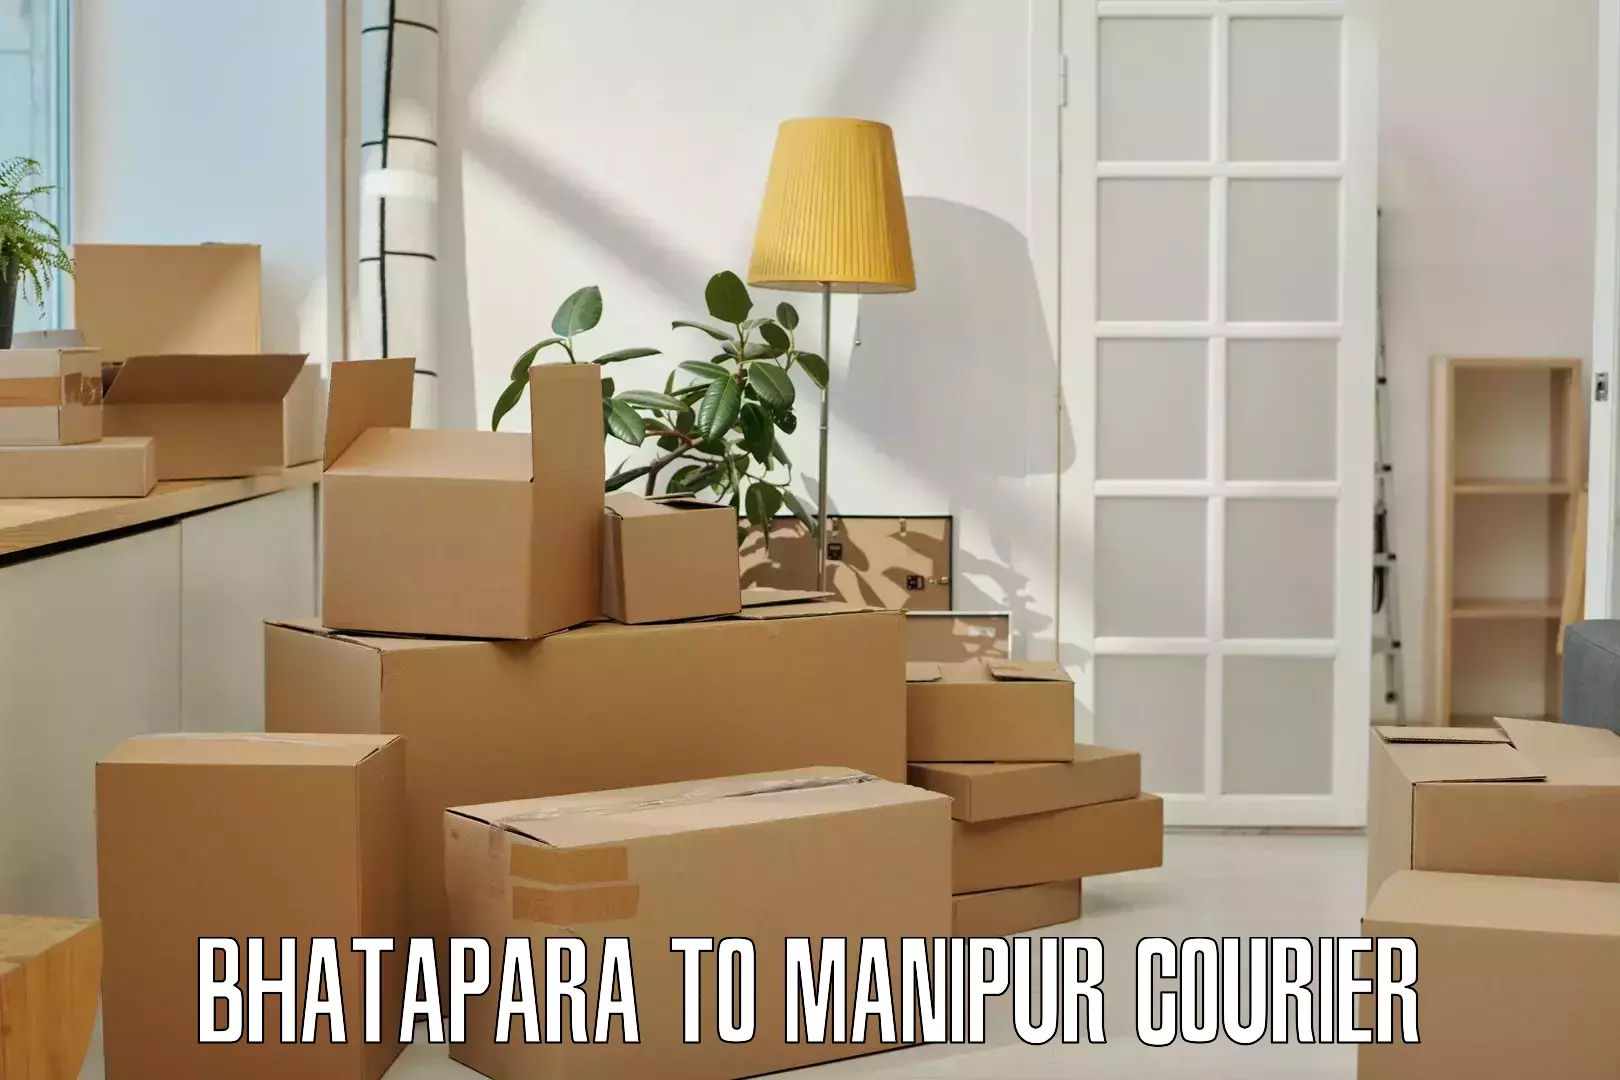 Trackable shipping service Bhatapara to Kaptipada